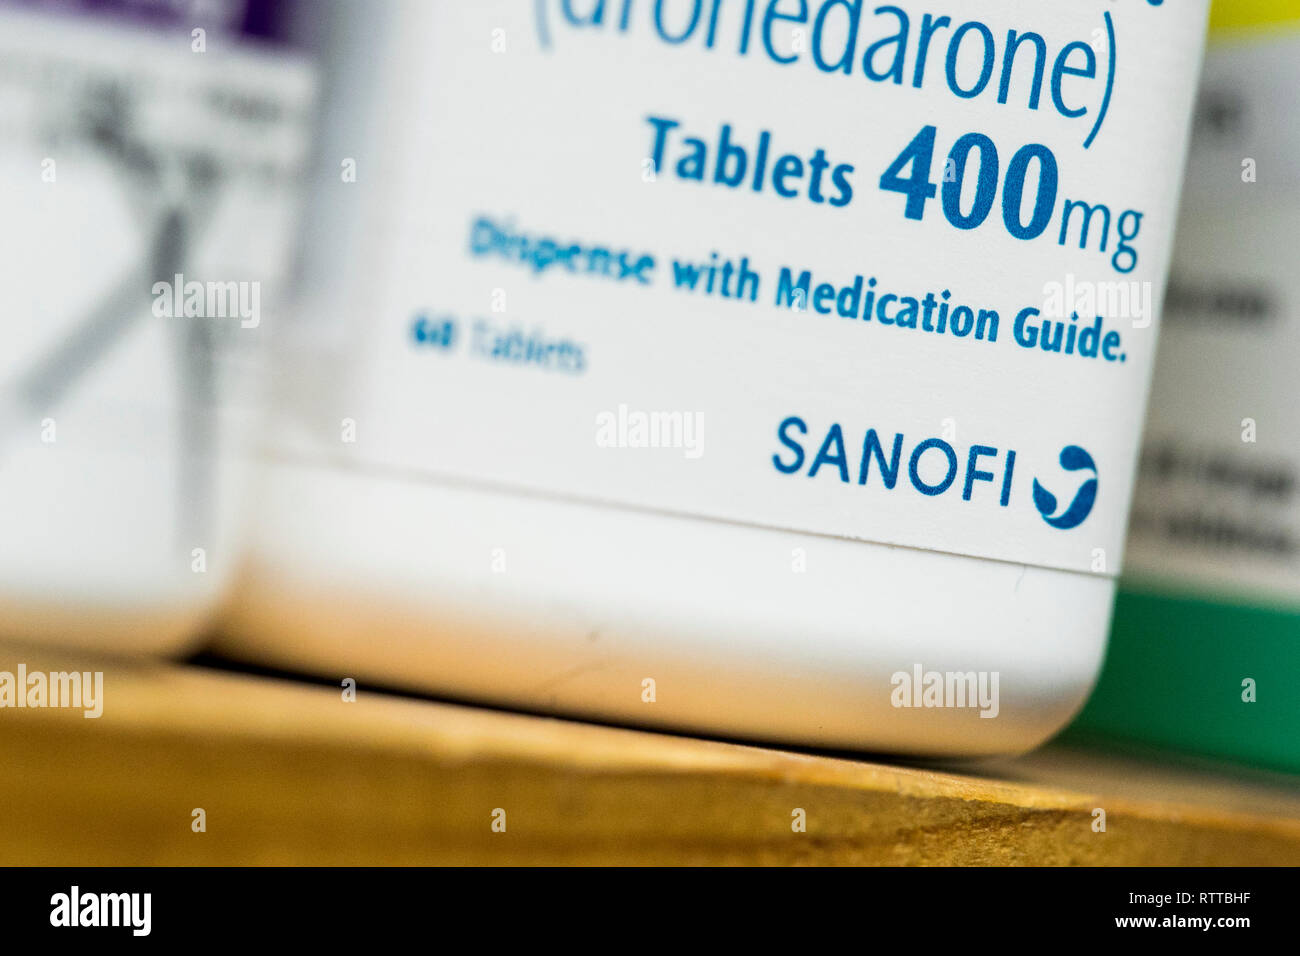 Un logo Sanofi est vu sur l'emballage de produits pharmaceutiques sur ordonnance photographié dans une pharmacie. Banque D'Images